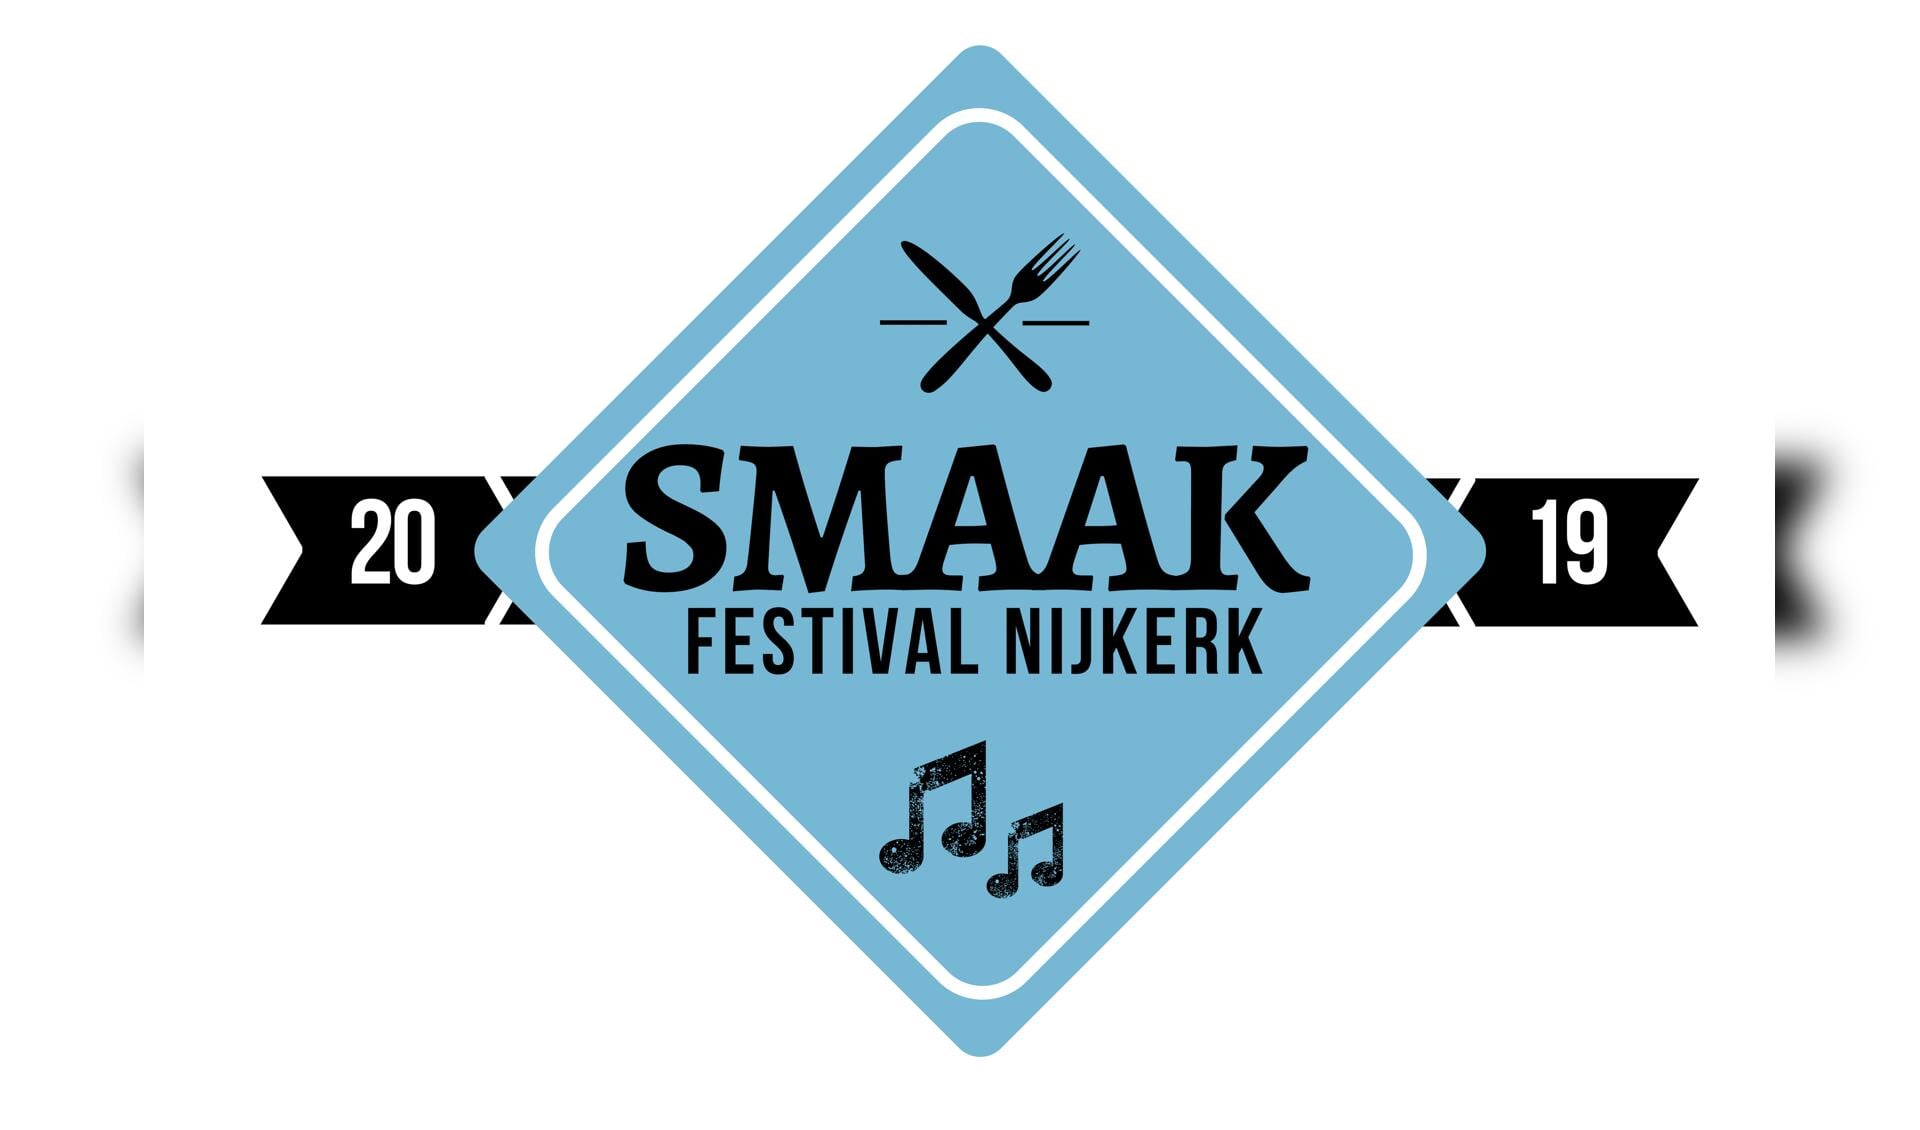 Het Smaakfestival wordt op 29 en 30 maart gehouden.